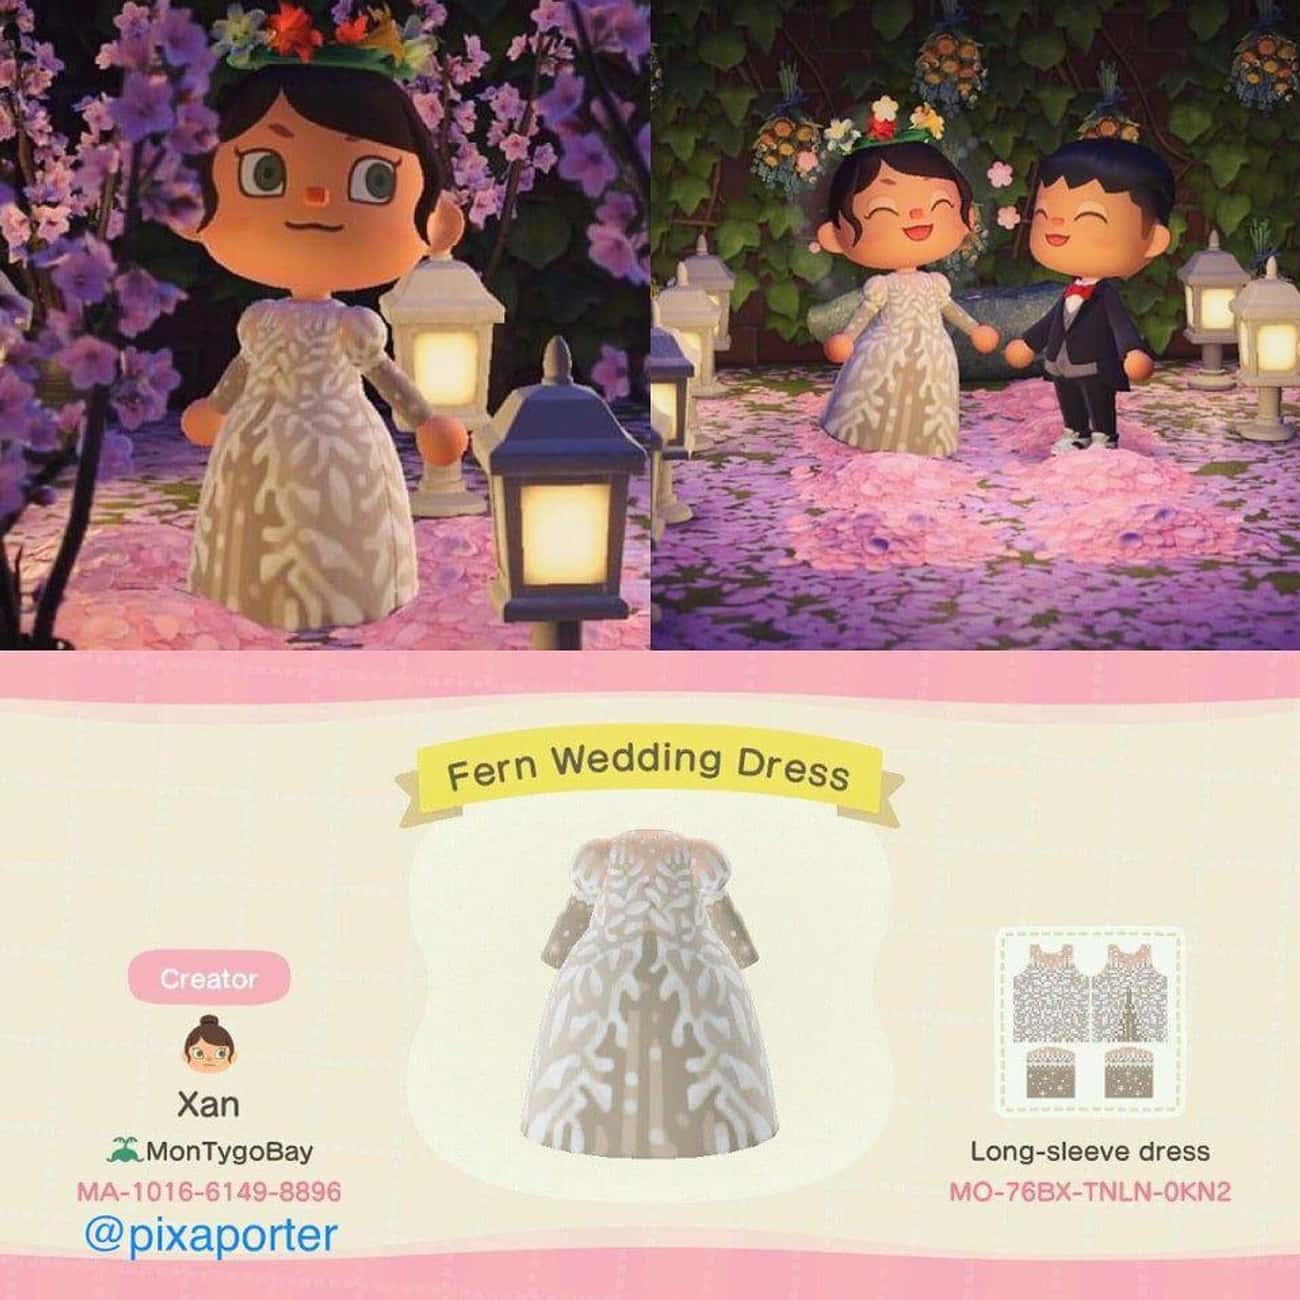 Fern Wedding Dress